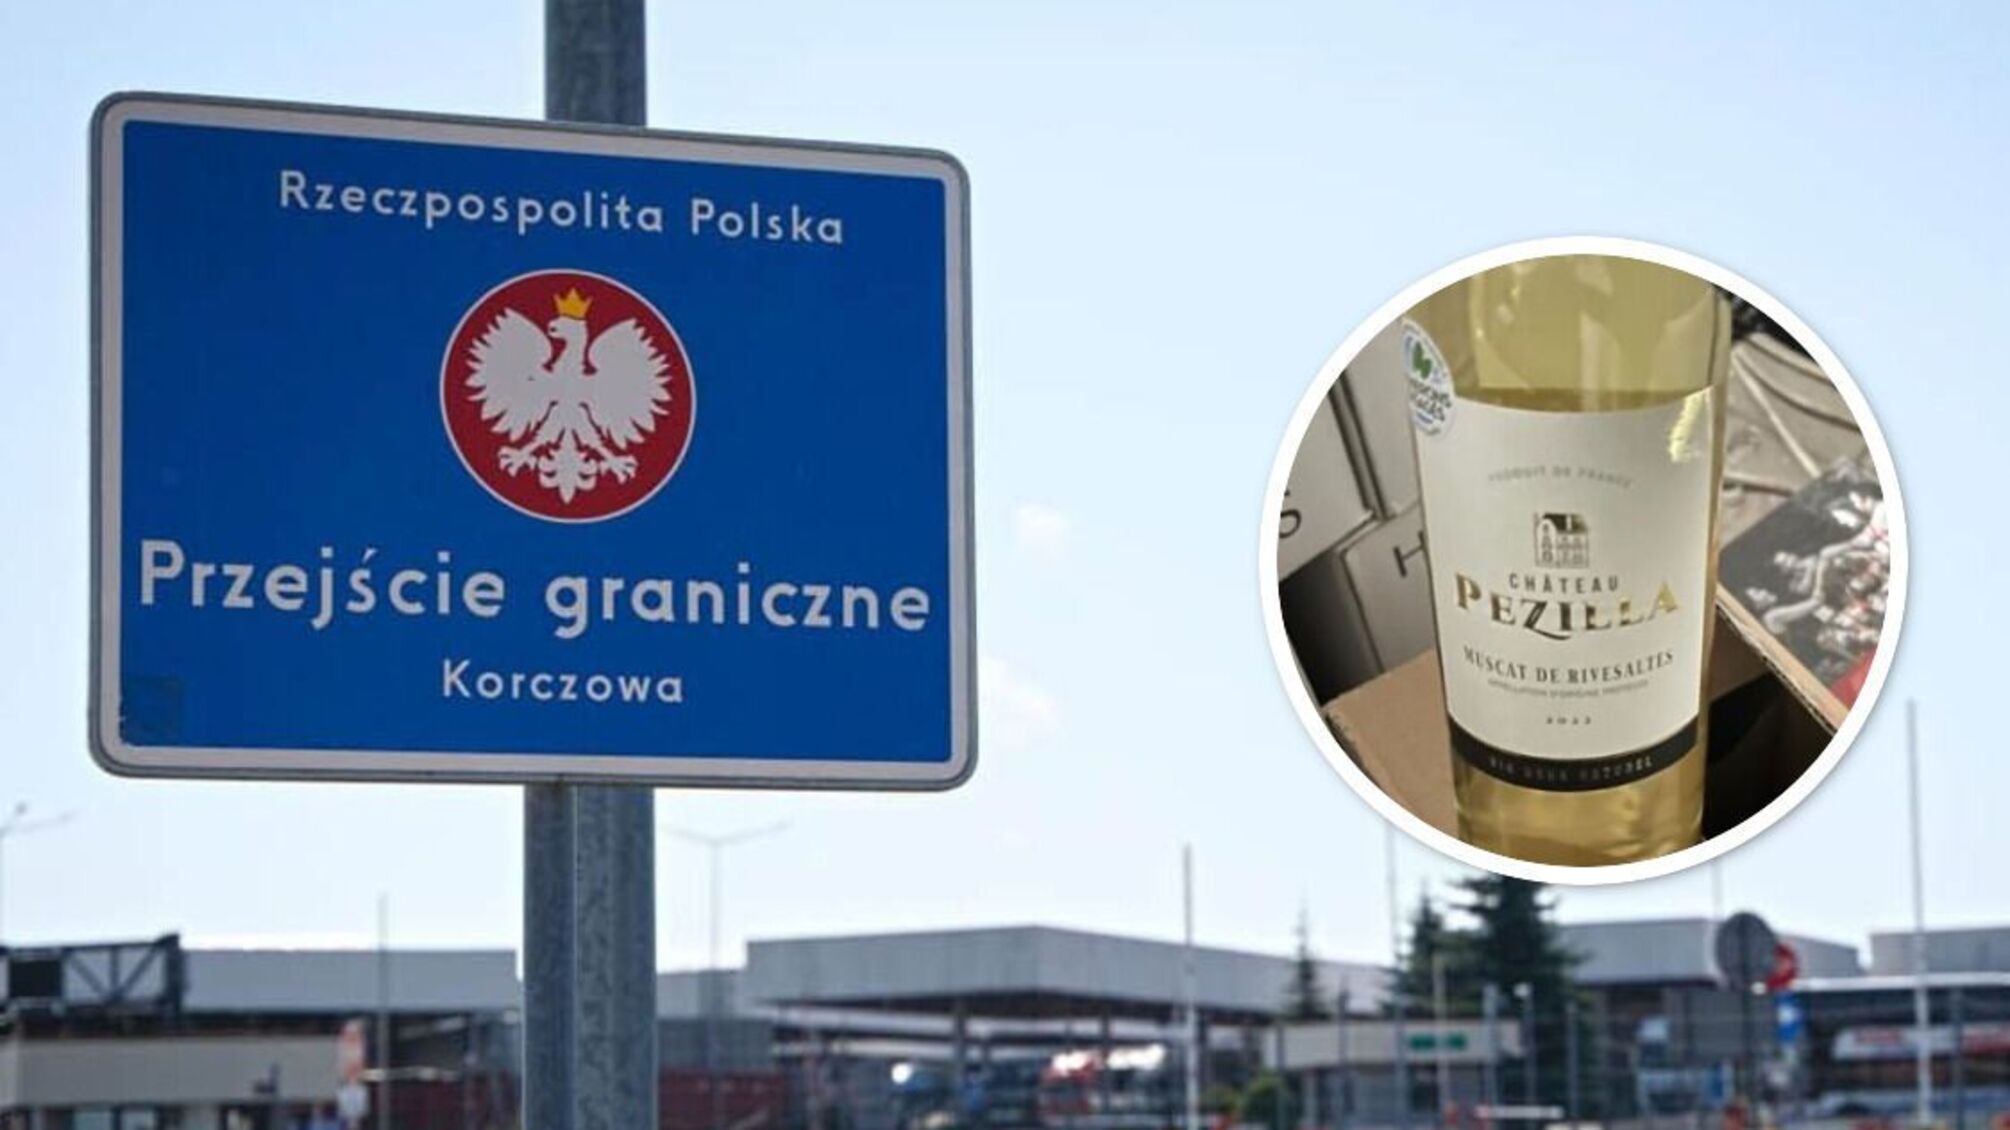 Забив машину грузинським вином на 700 тис. грн: ДПСУ знайшла ящики серед гумдопомоги - деталі